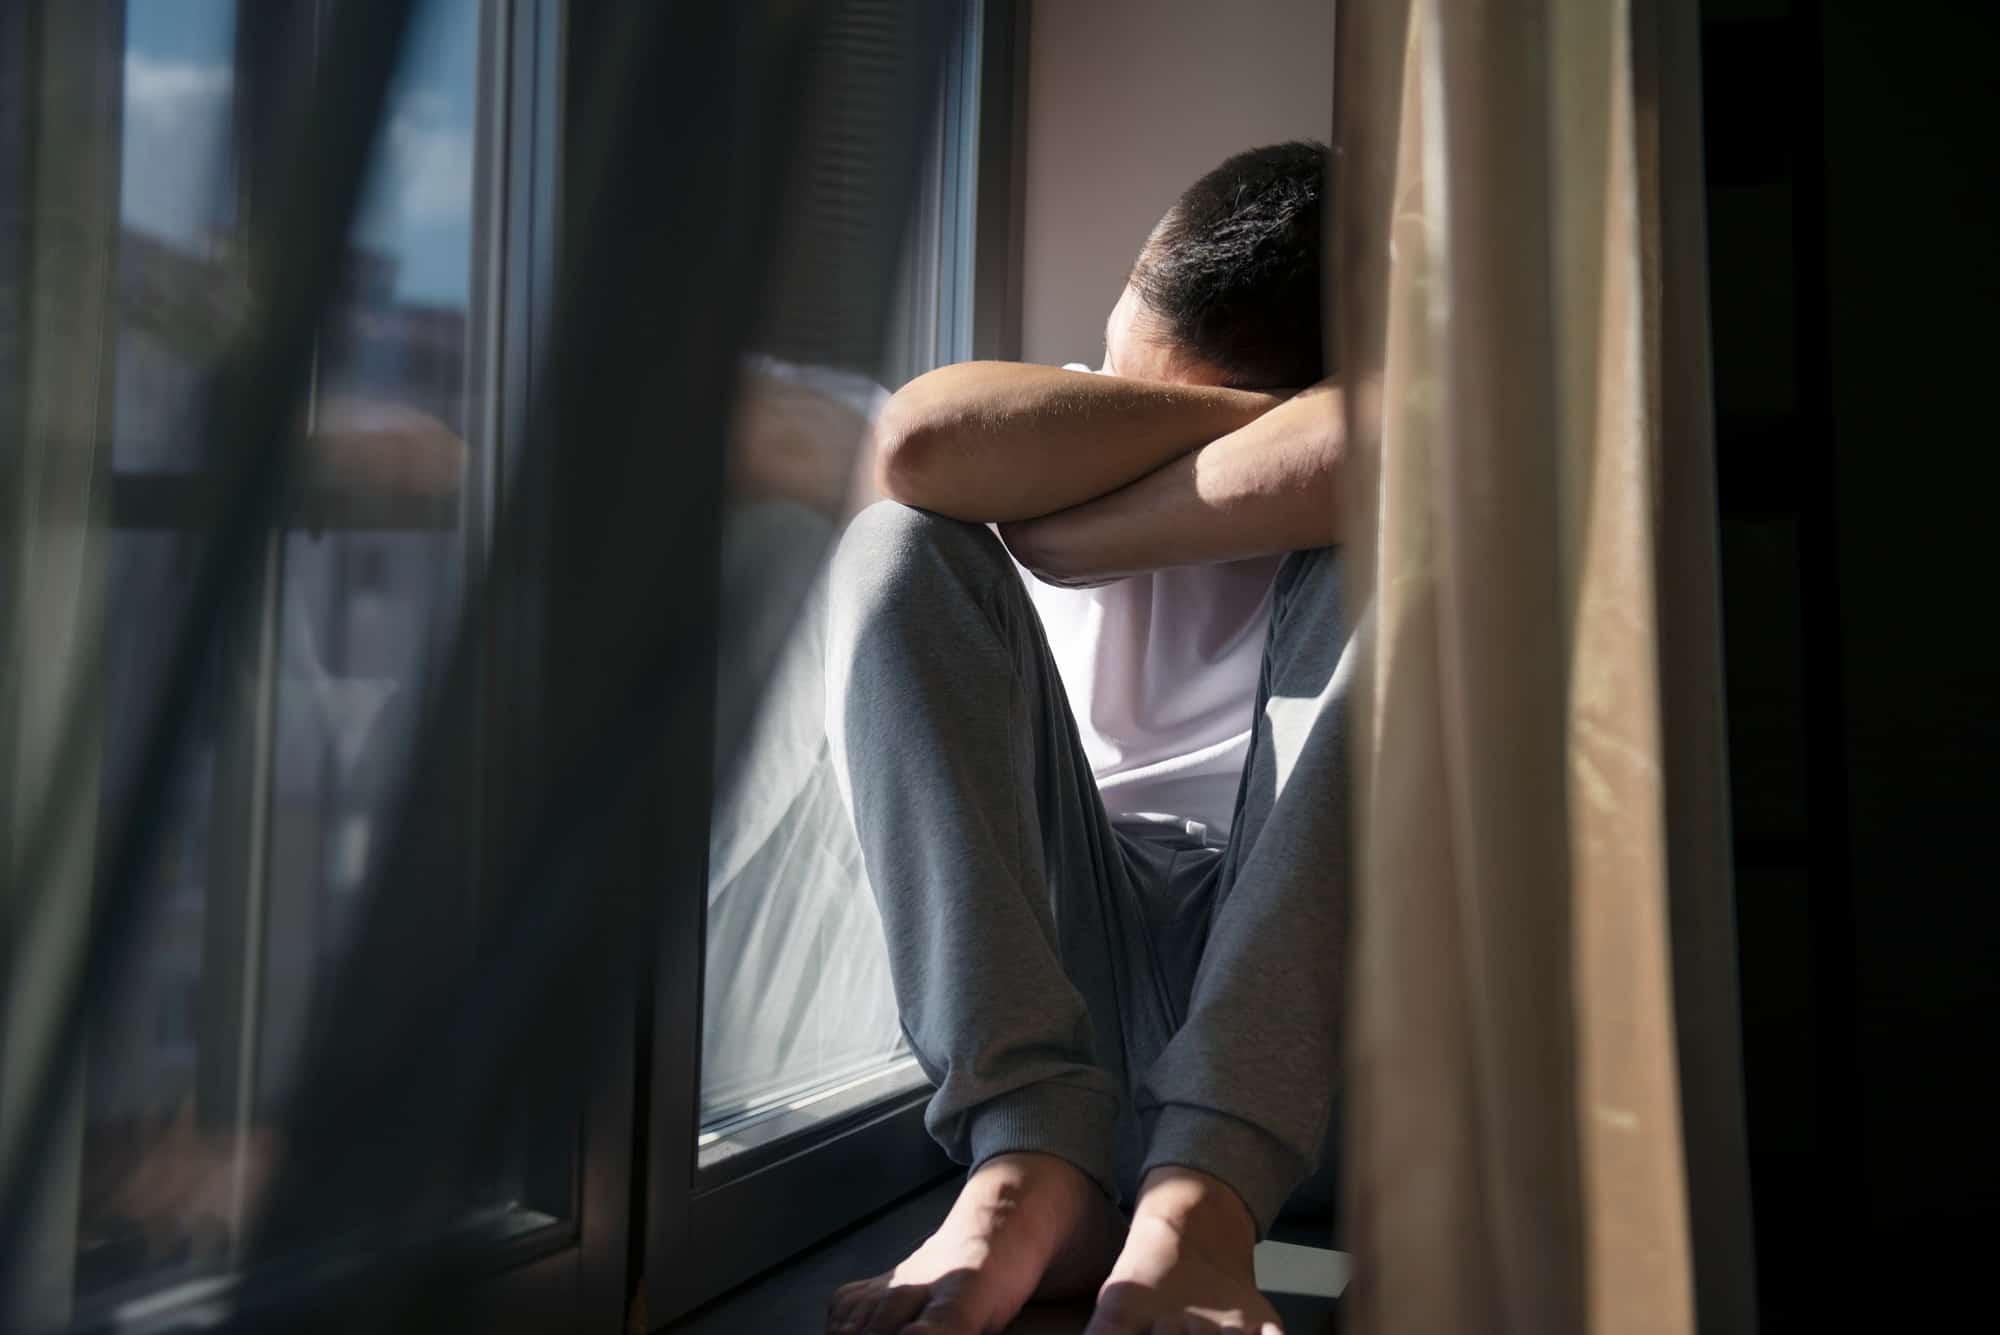 Abuso sexual en menores de edad: señales de alerta y las consecuencias psicológicas que deja